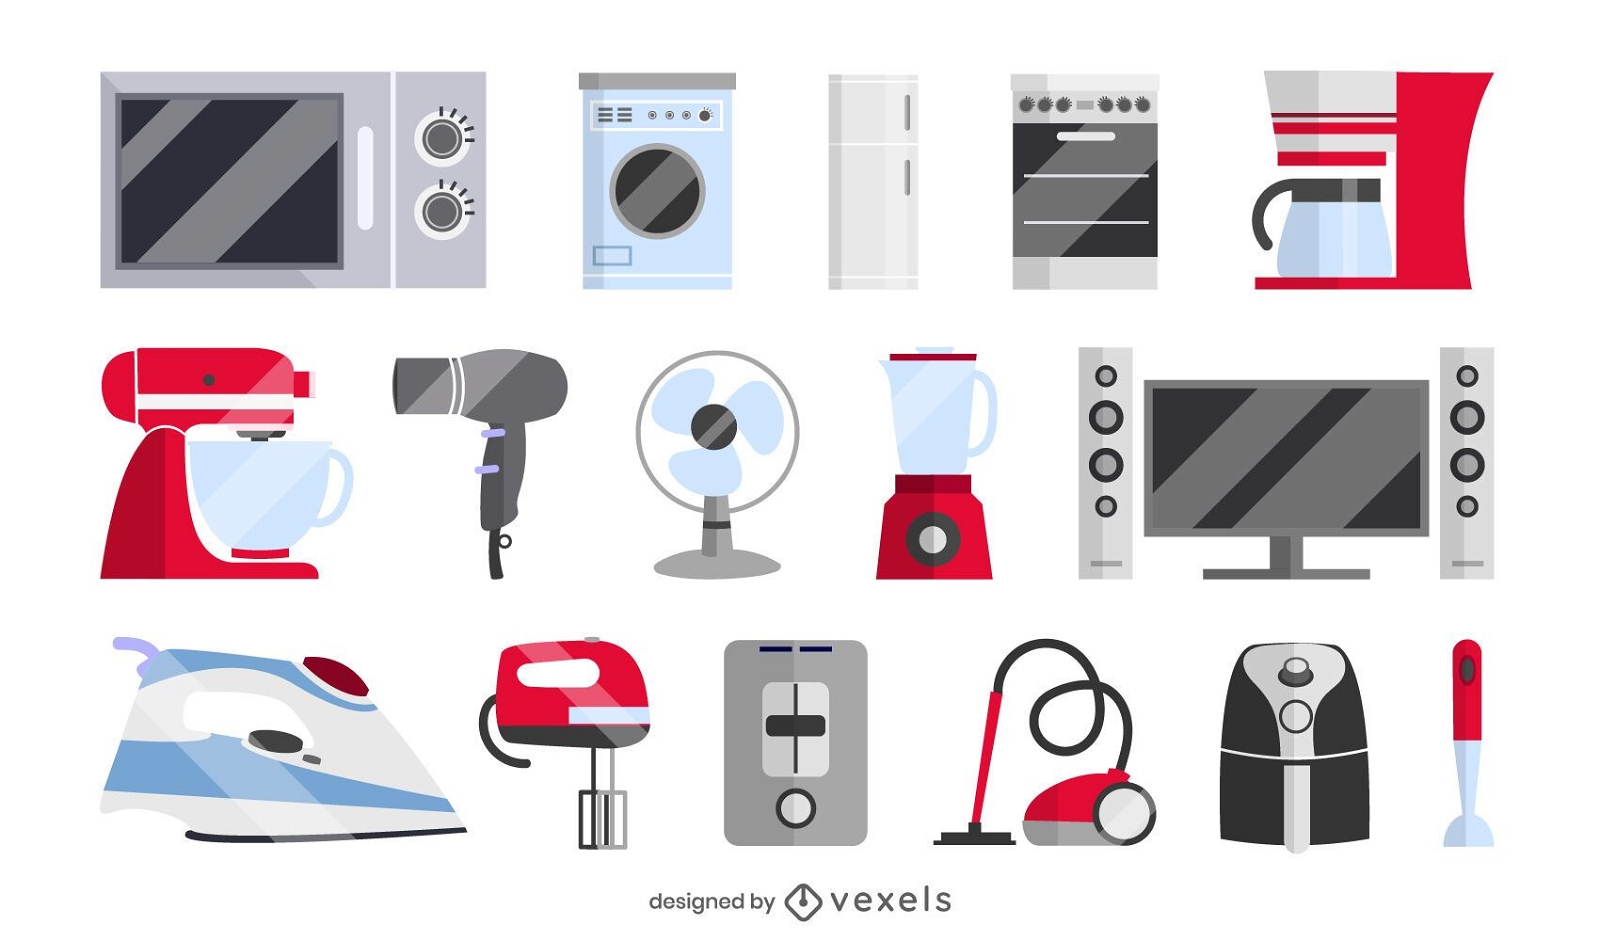 Household Appliances, Vectors